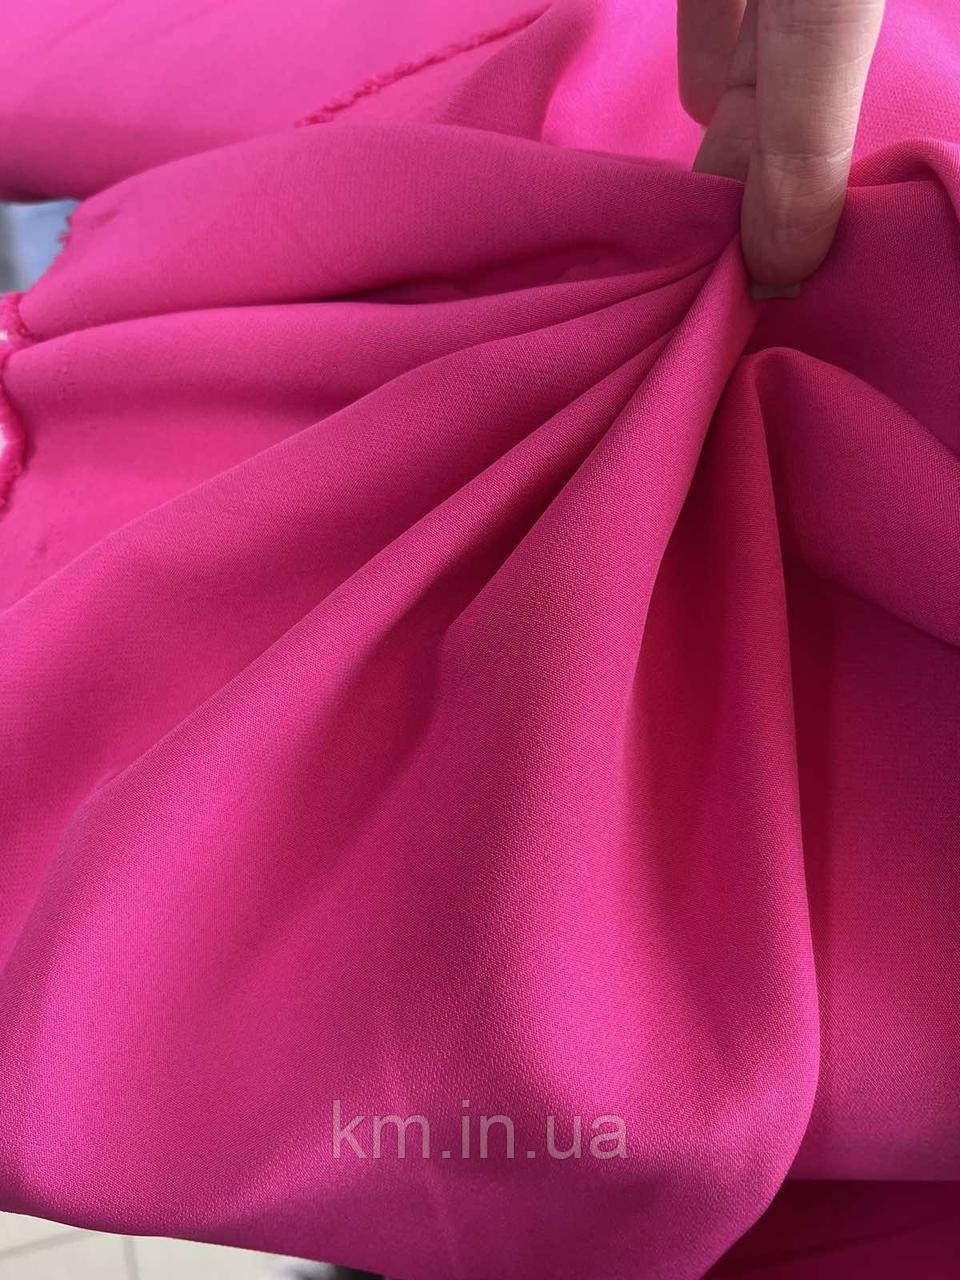 Тканина Креп Костюмно-платтяний рожевого кольору